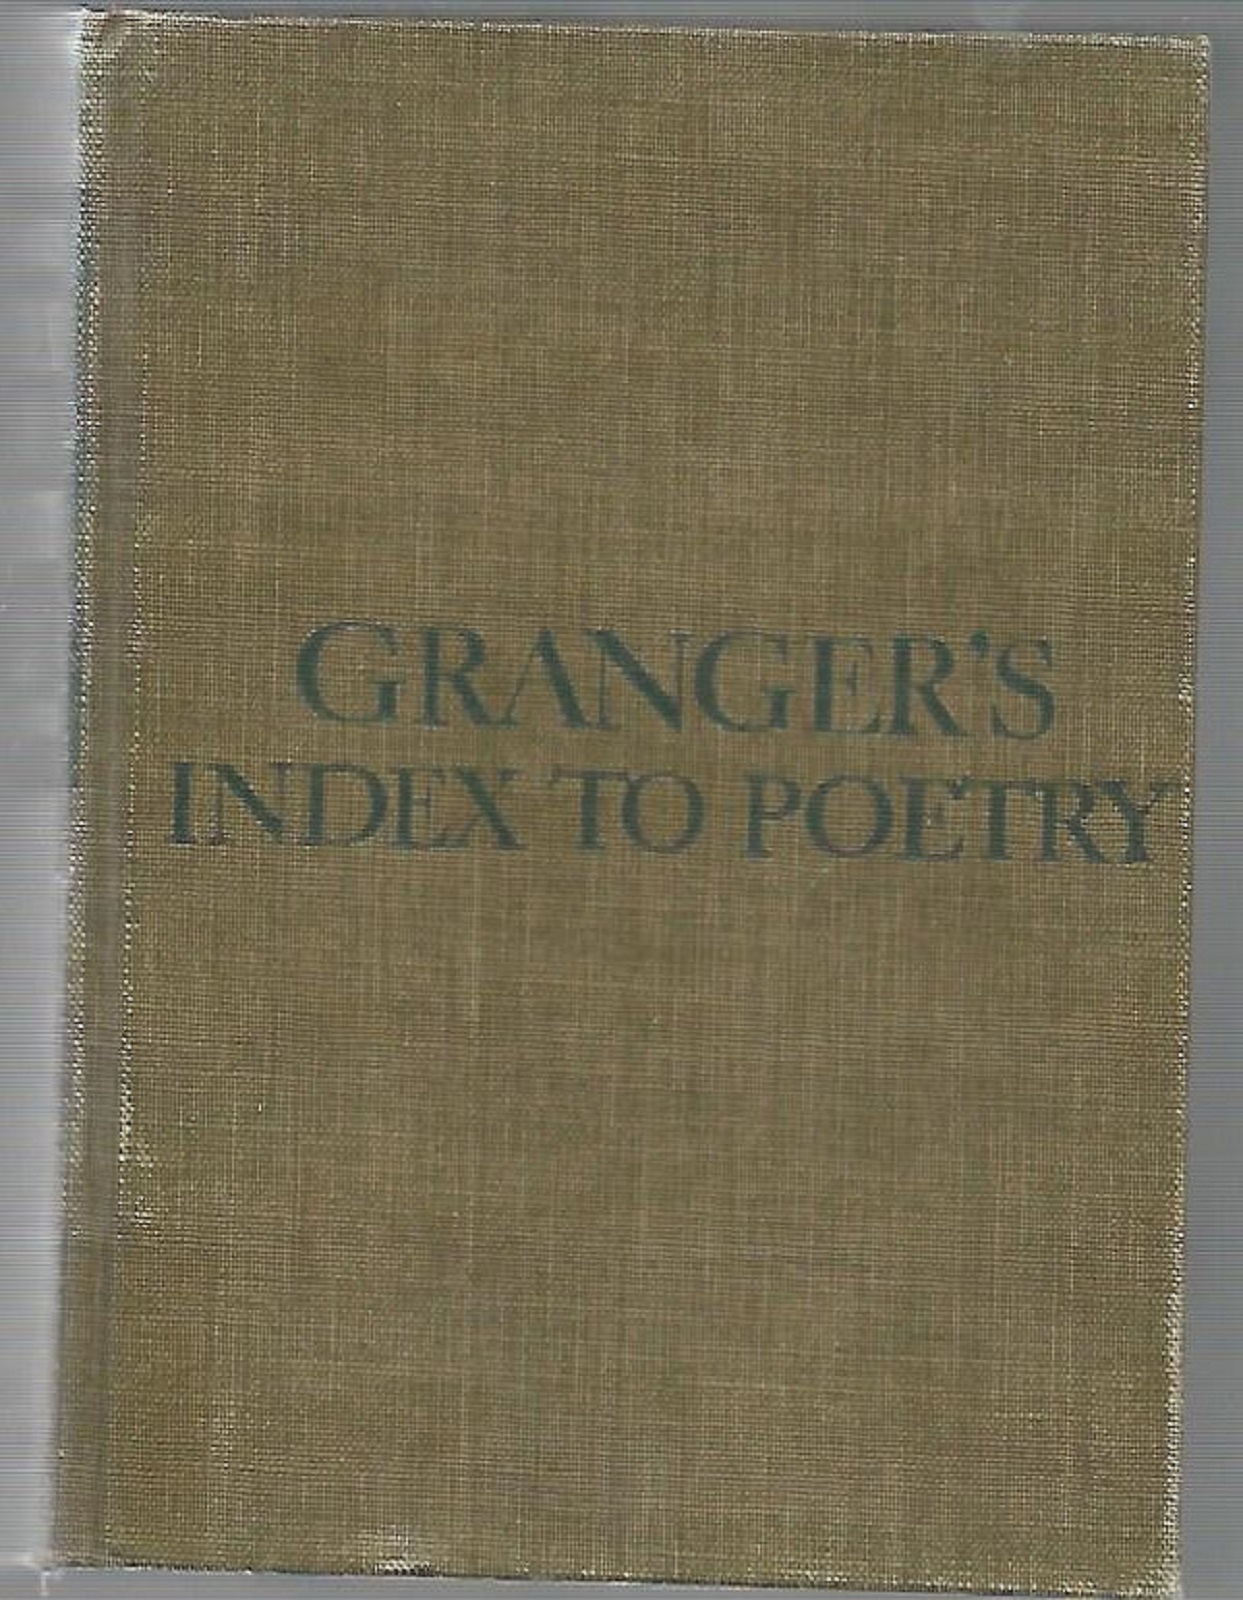 Granger's Index to Poetry - Smith, William J.